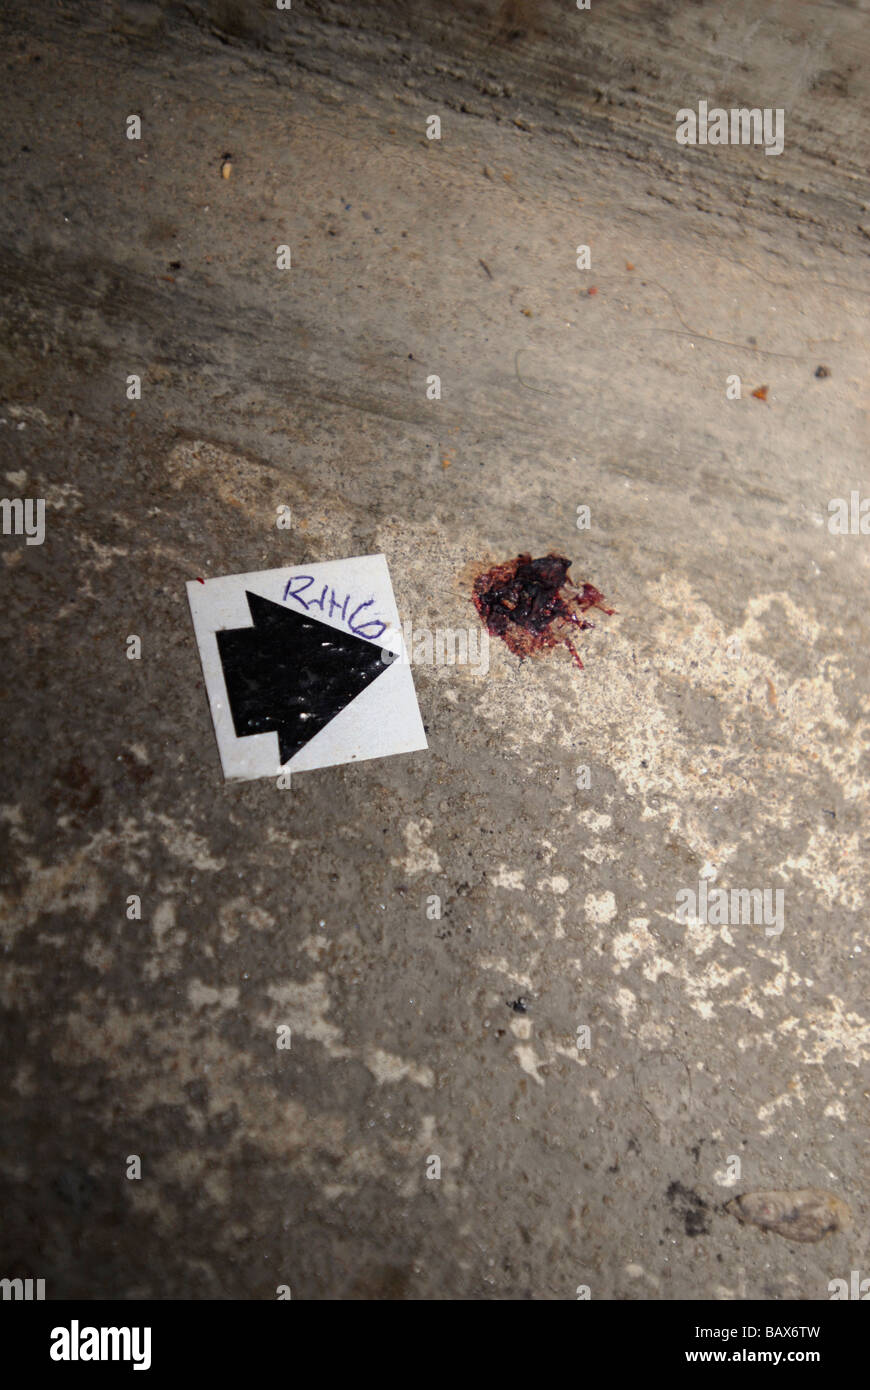 Taches de sang marqué par une flèche noire dans une scène de crime Banque D'Images